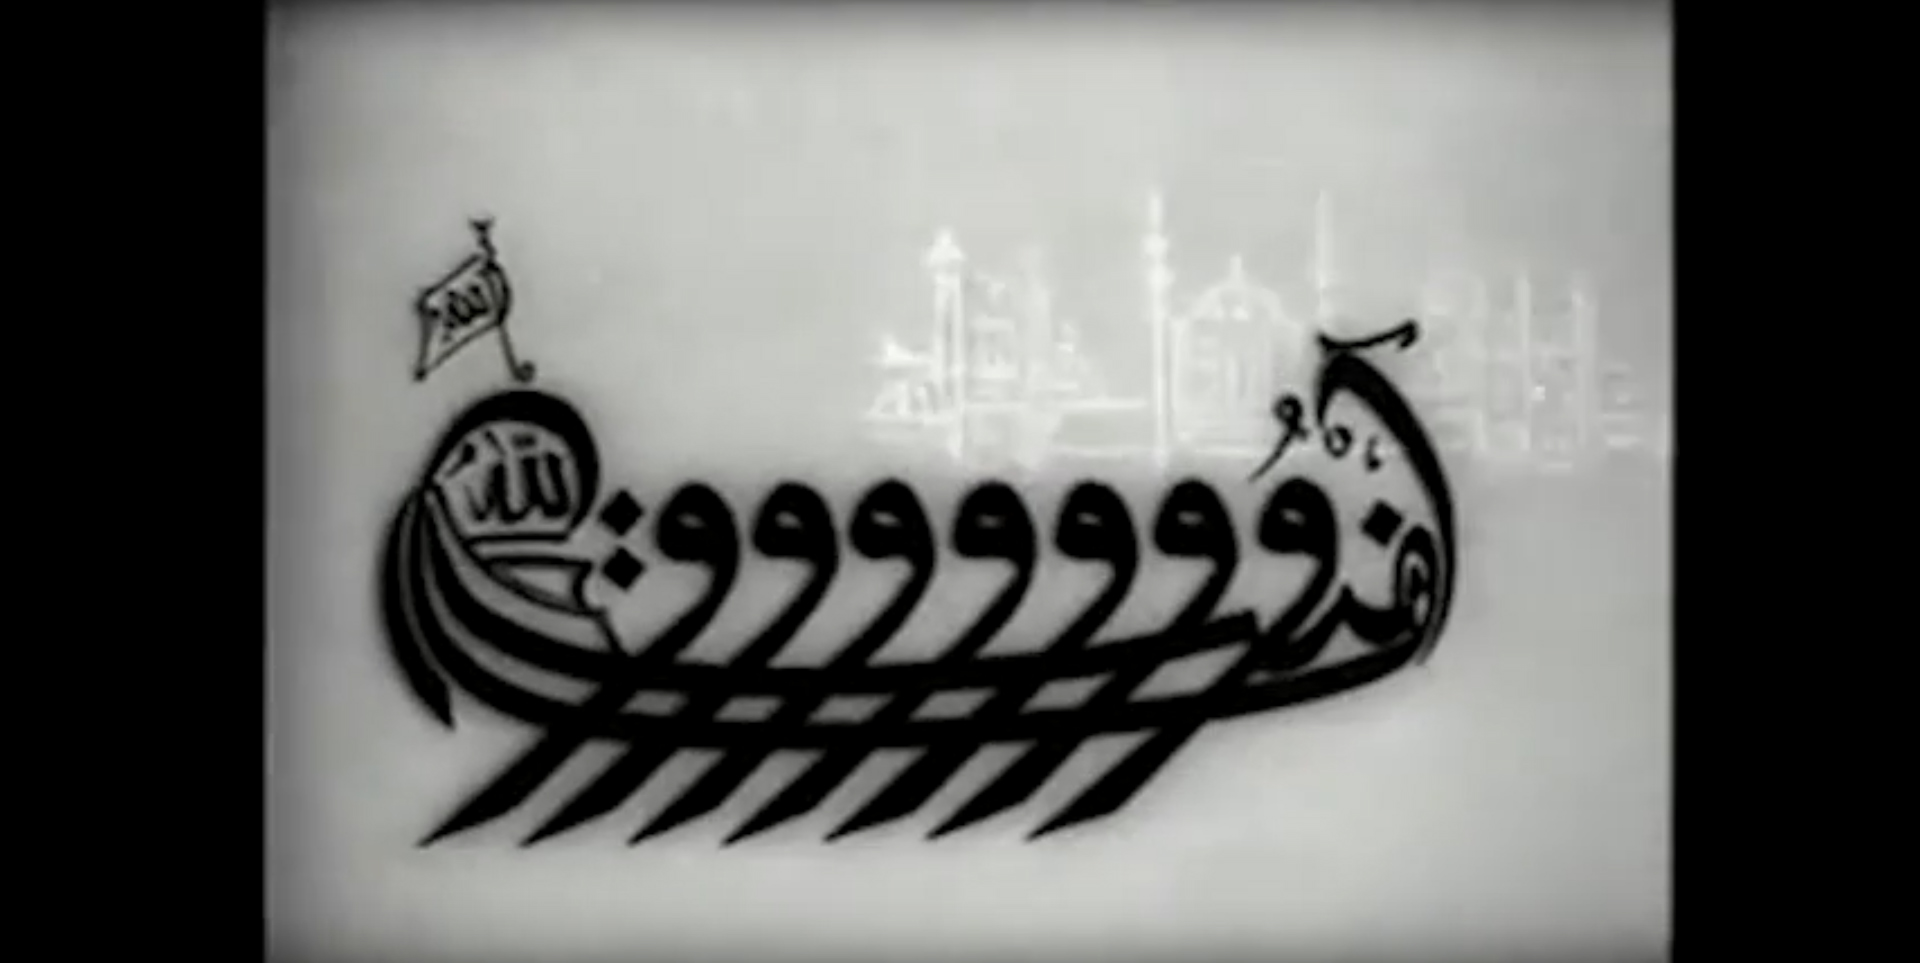 Figure 3: Amentü Gemisi Nasıl Yürüdü? [How Was the Amentü Ship Steered?]